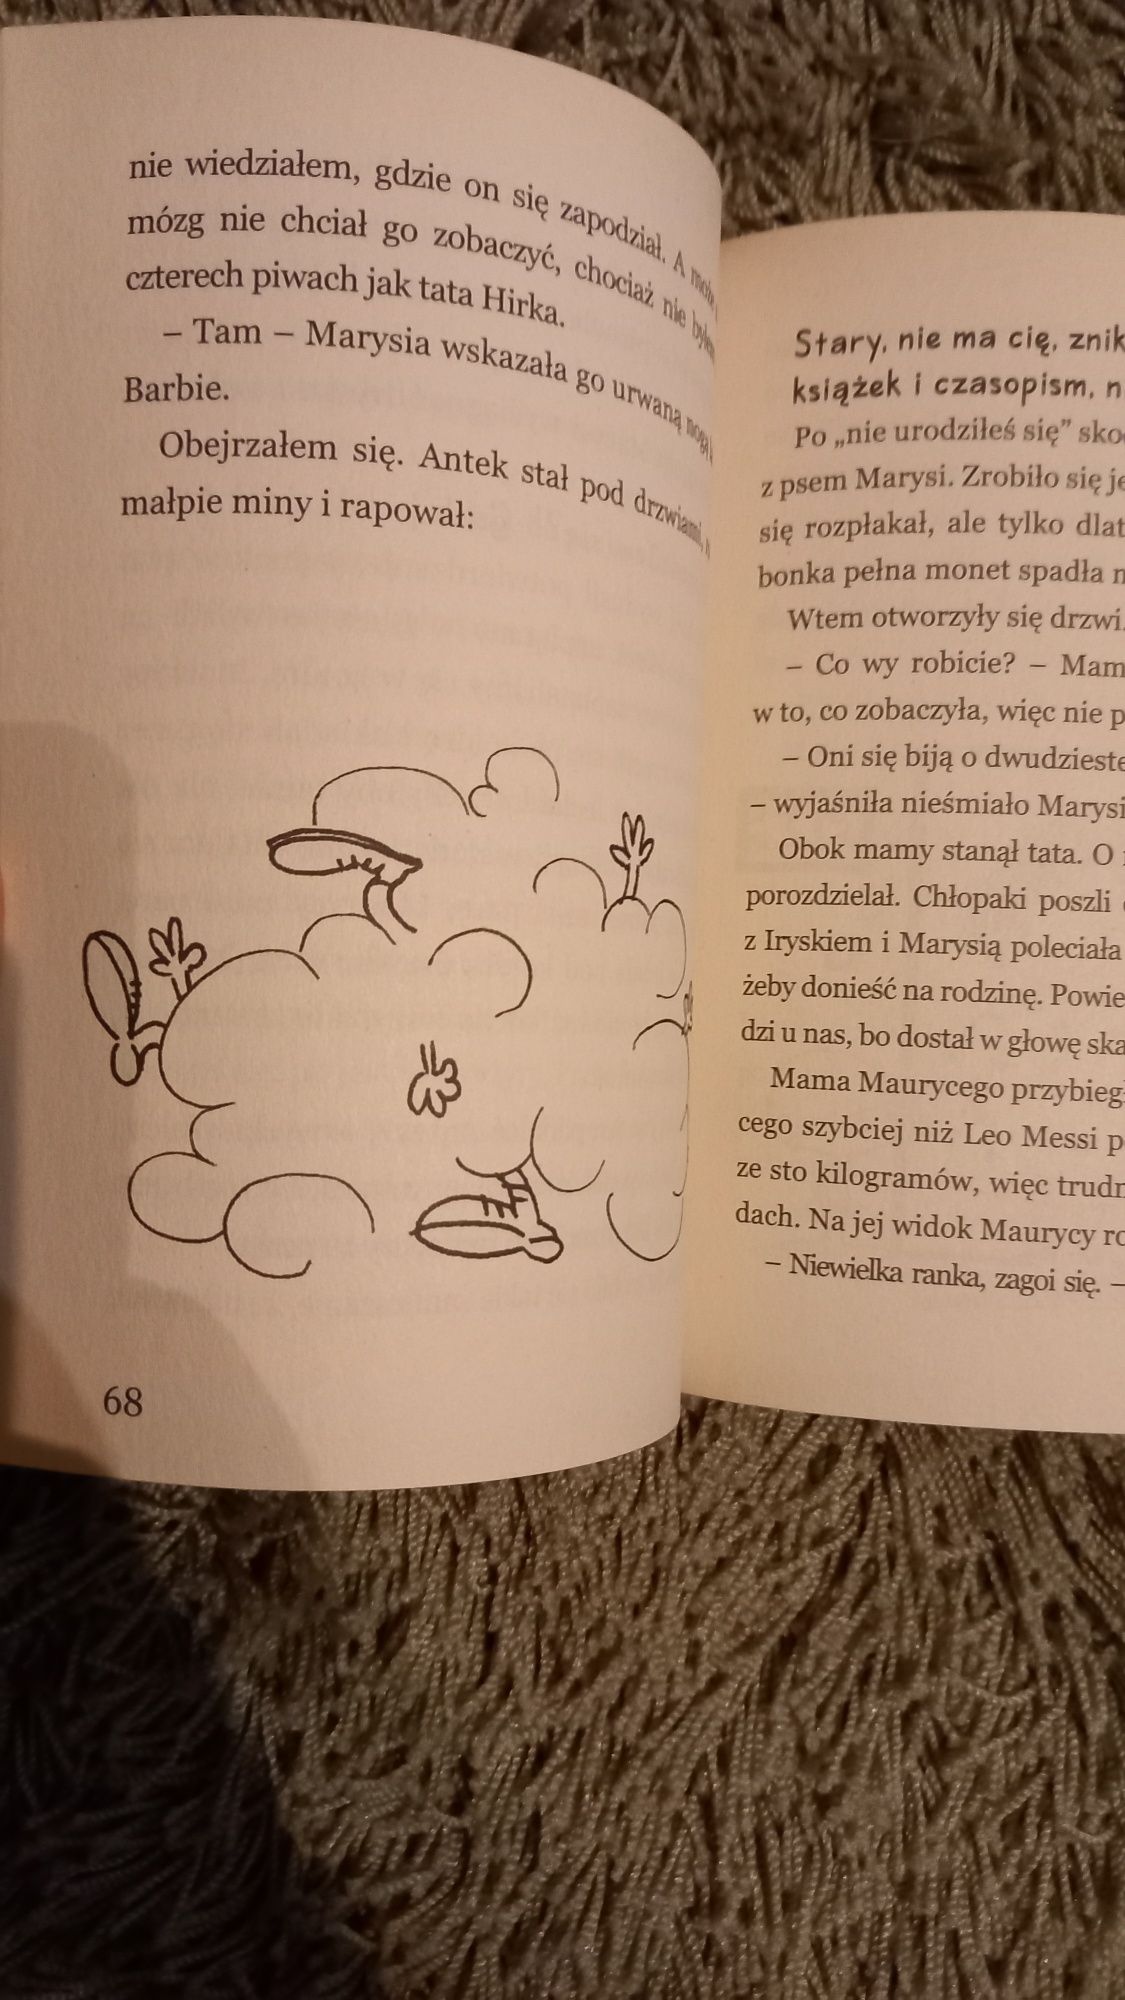 Książka z serii 'Filipek i rodzina" pełna humoru o chłopcu Nowa